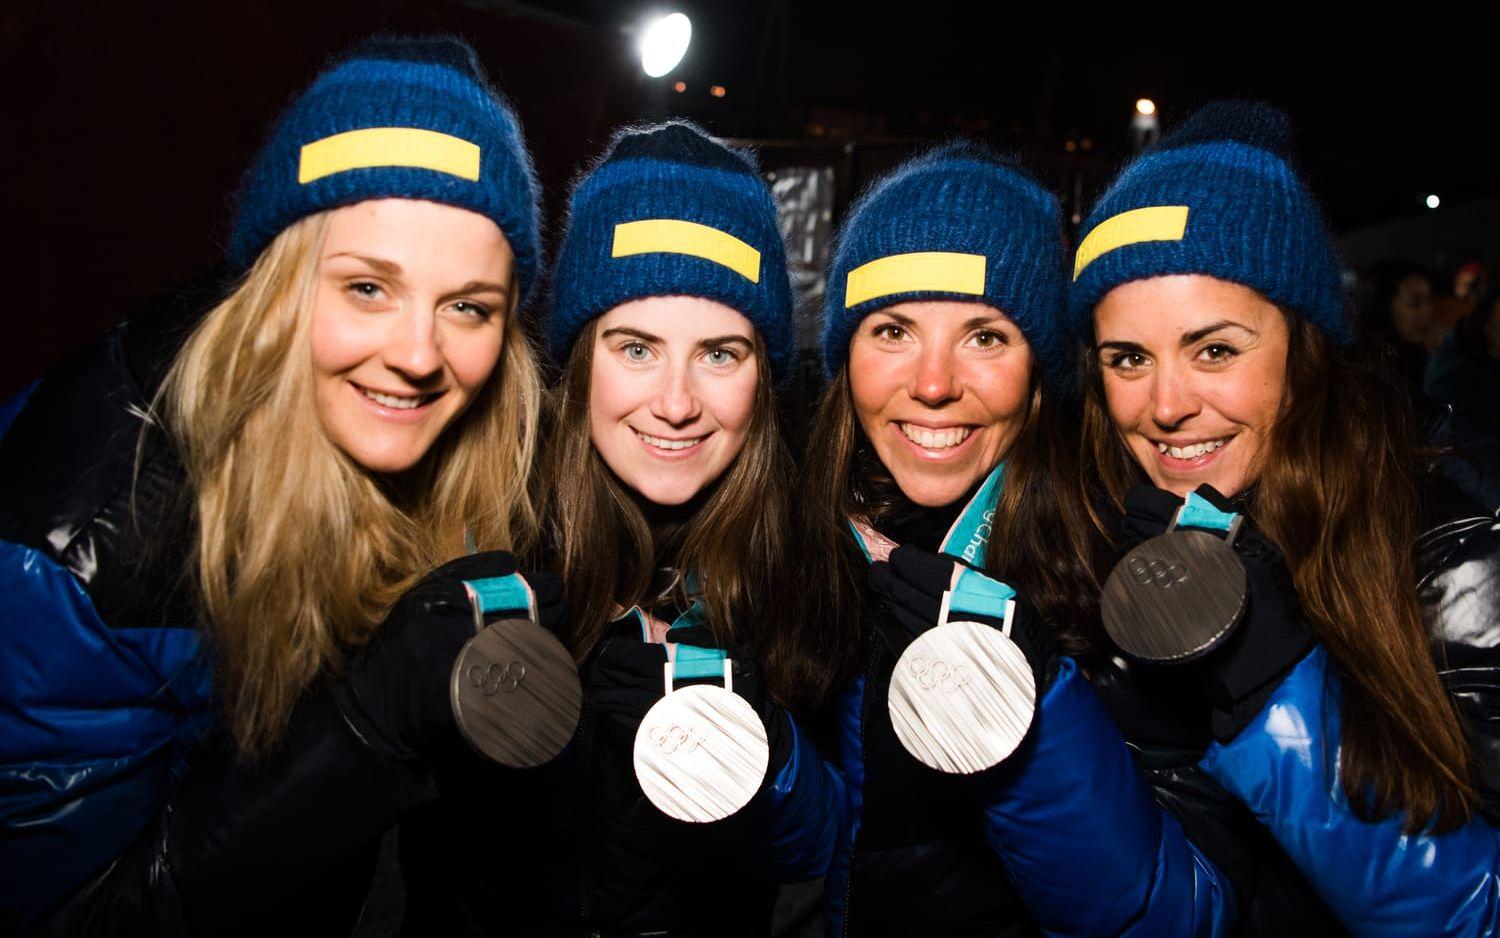 Så sent som i februari i år var Anna Haag med och körde hem ett silver till Sverige i OS-stafetten